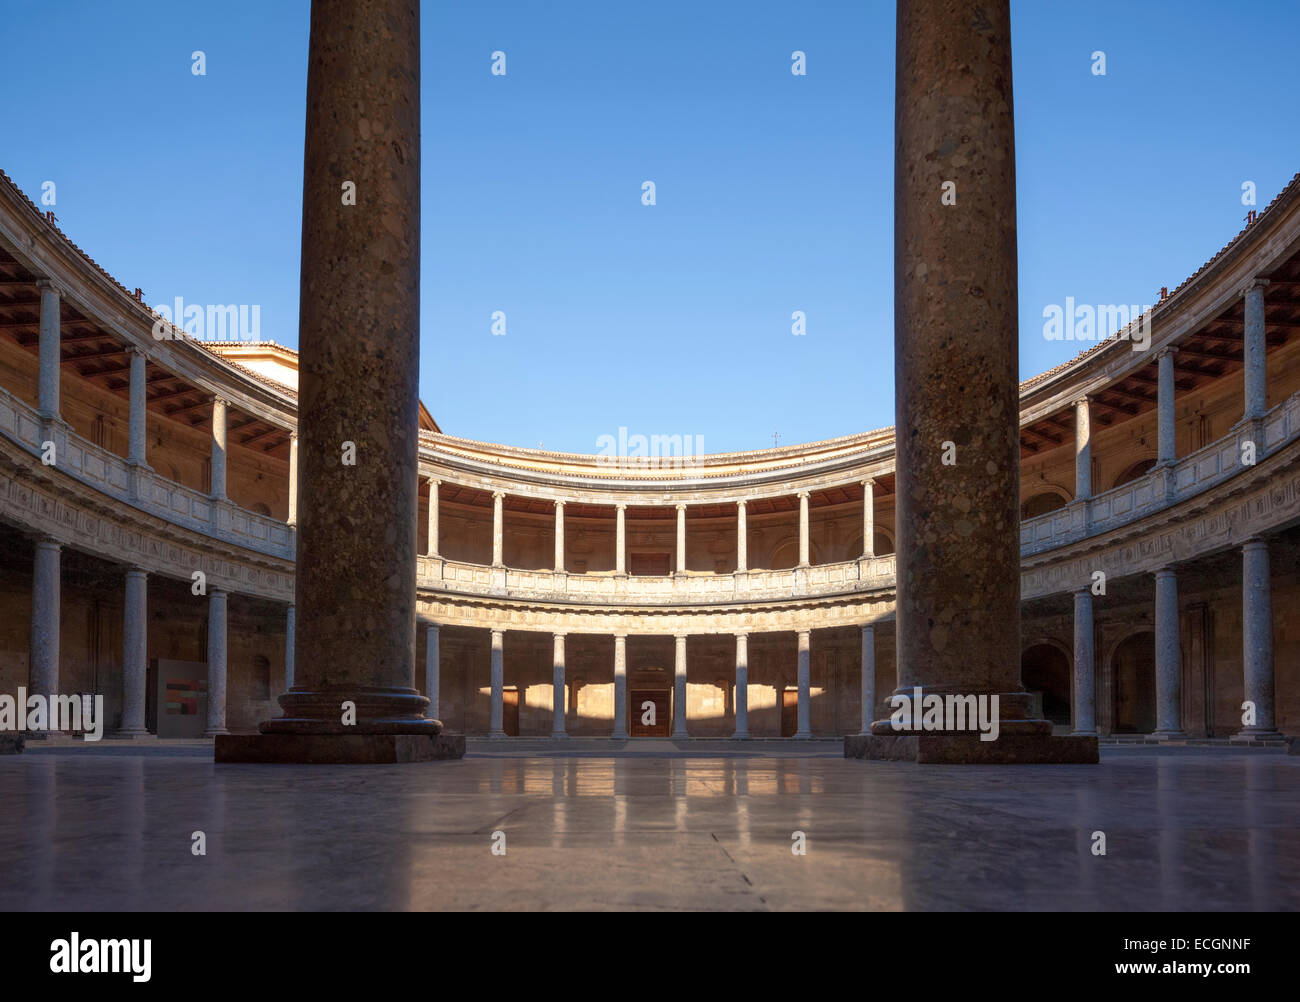 Palazzo rinascimentale del Sacro Romano Imperatore Carlo V nell'Alhambra Granada Spagna. Palacio Carlos V. circolare interna del cortile. Foto Stock